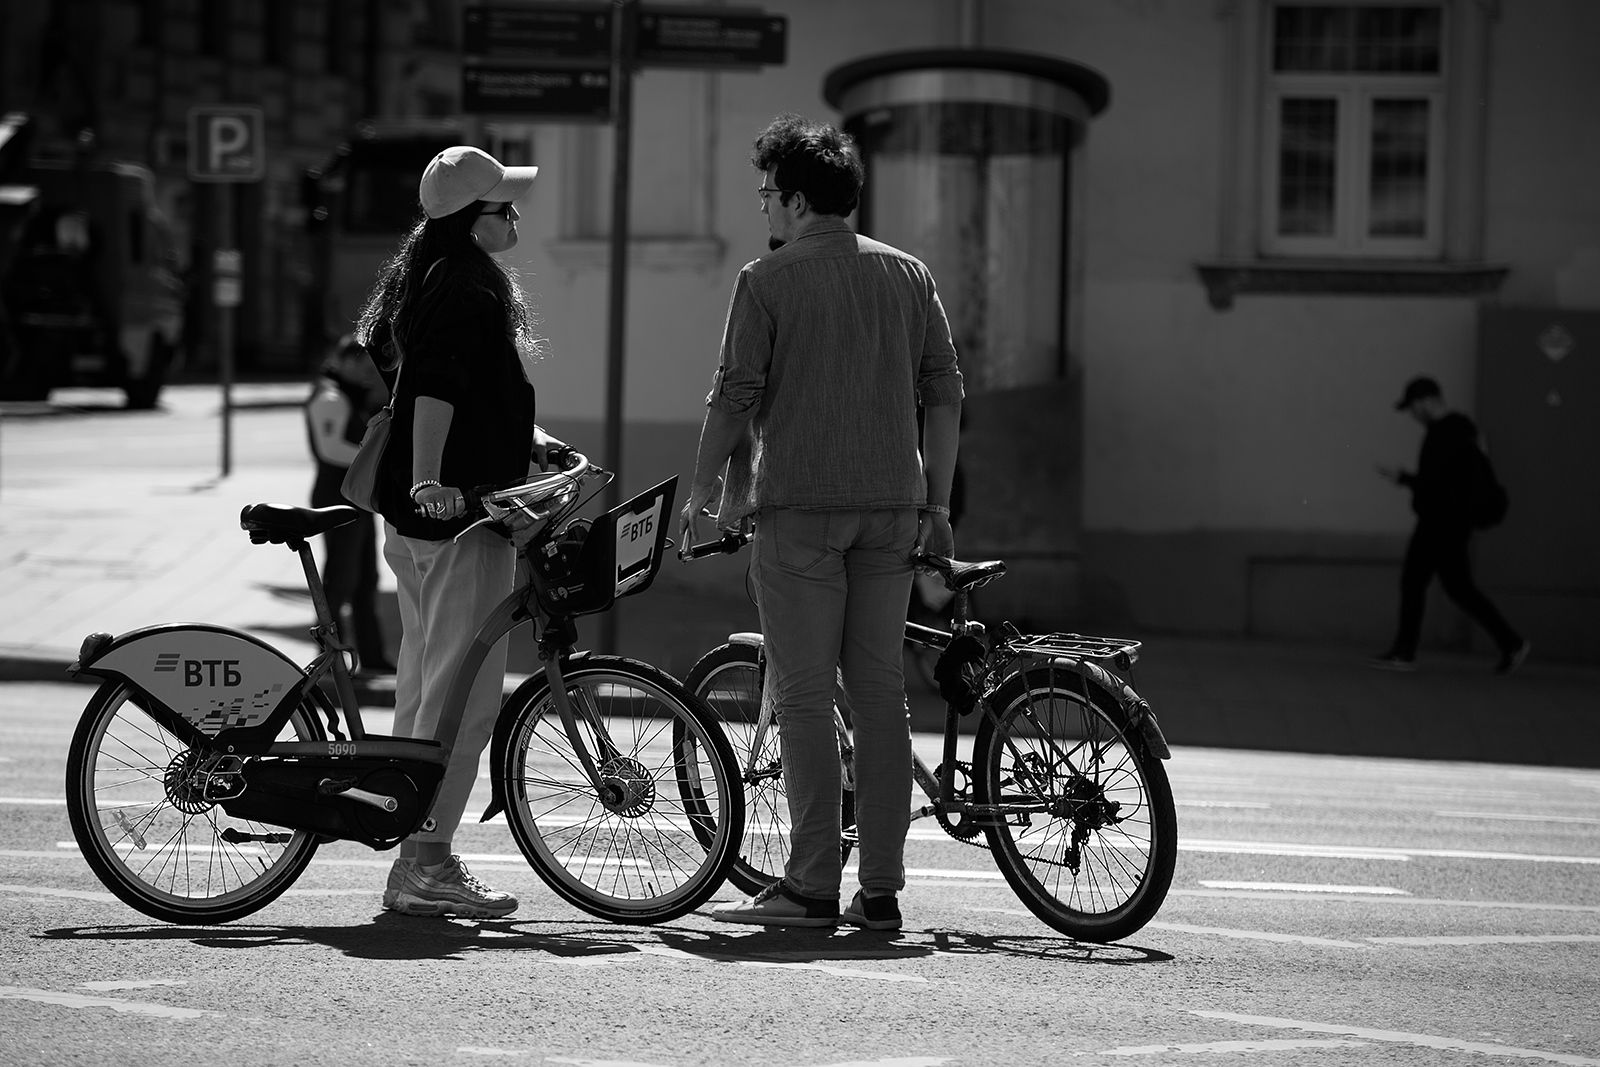 чб фото, городские картинки, двое, велосипеды, уличная фотография, город, жанровые картинки, стрит фото, Vera Trandina